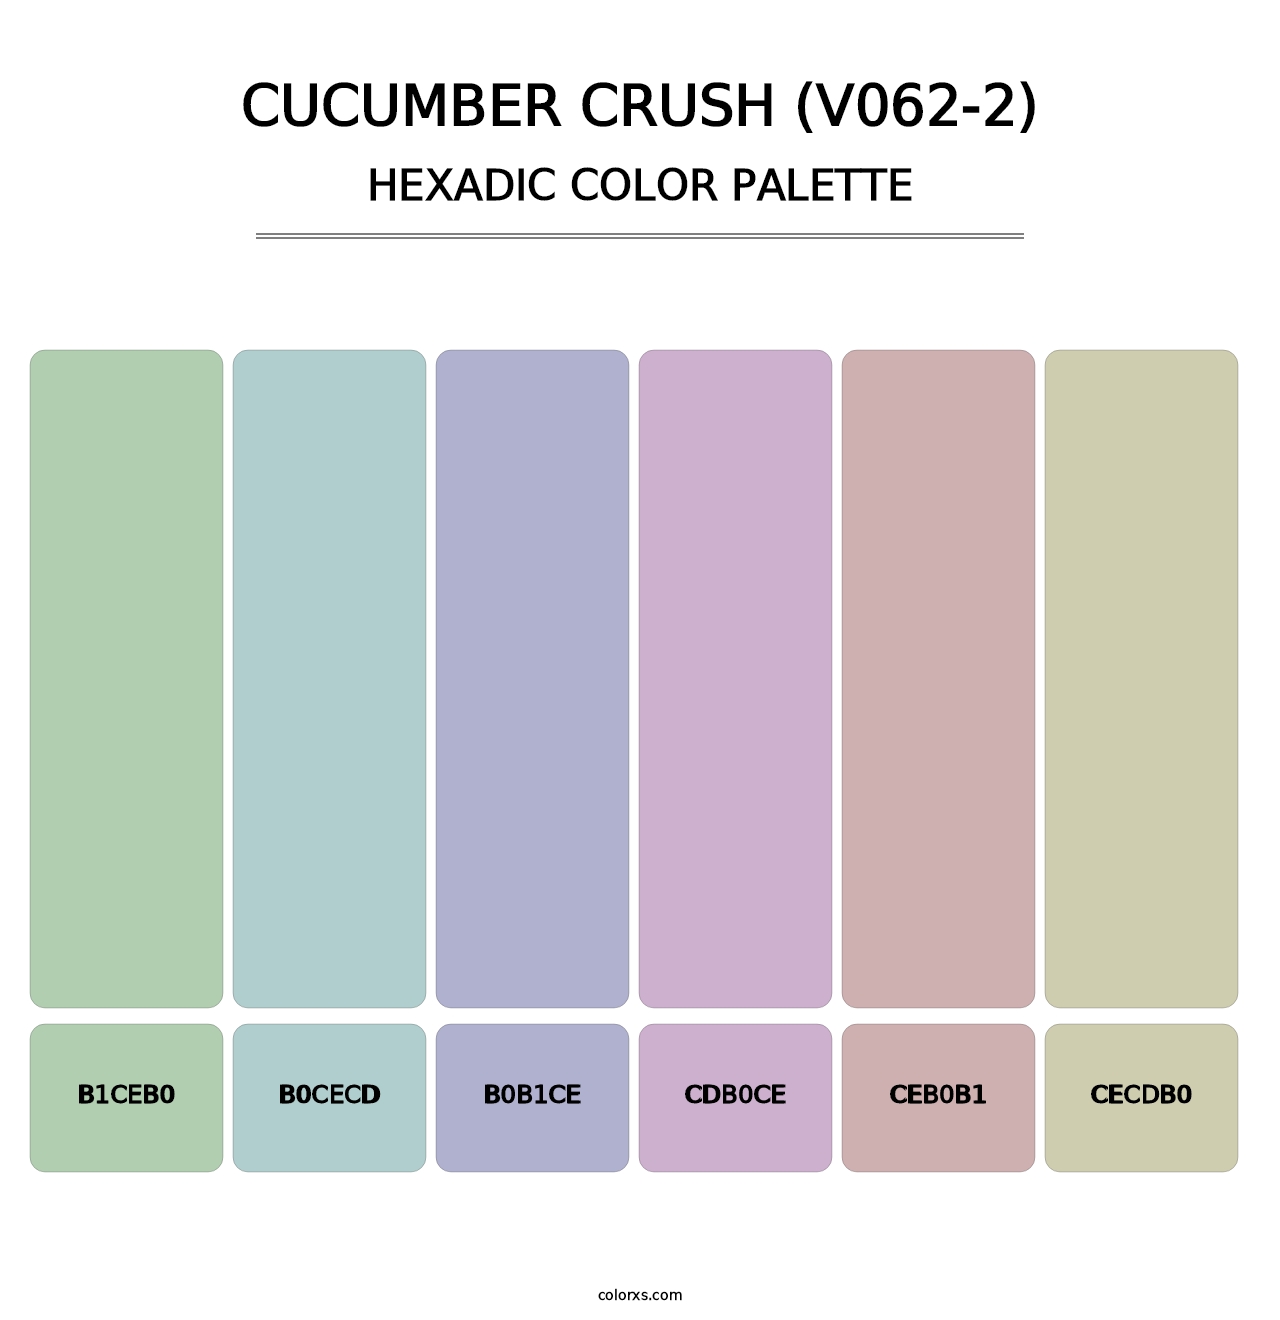 Cucumber Crush (V062-2) - Hexadic Color Palette